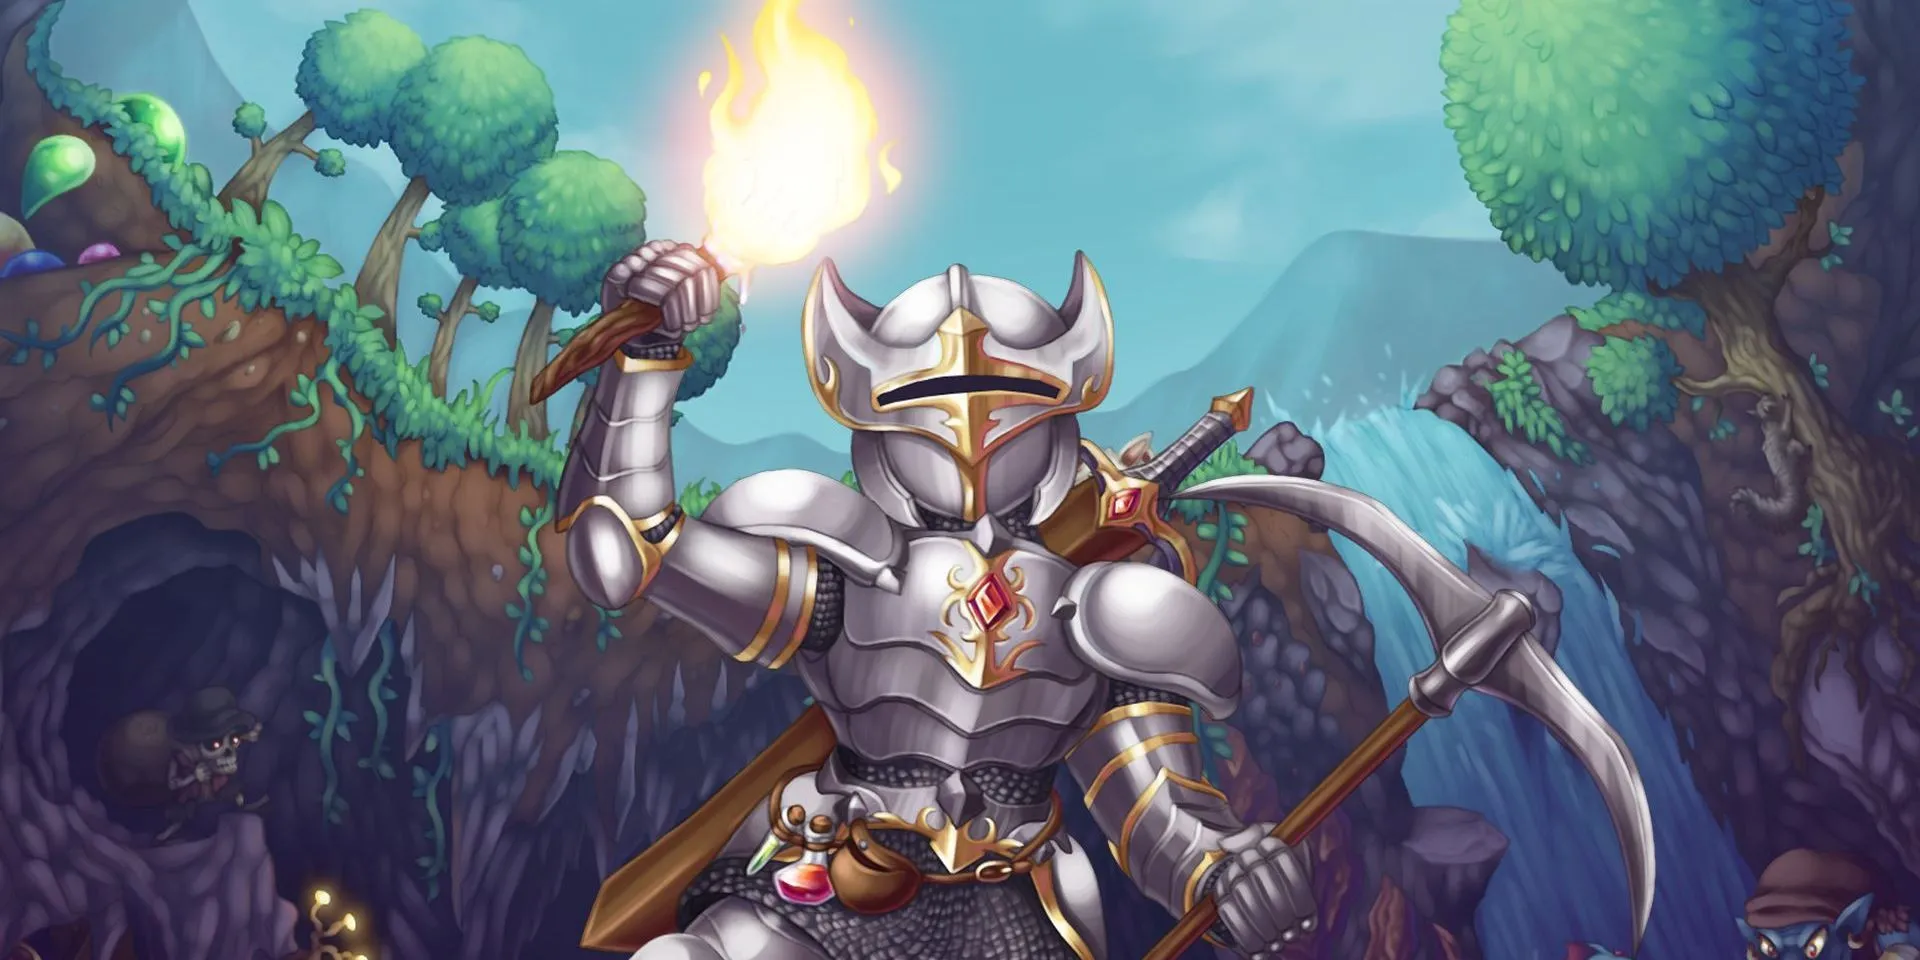 uma imagem promocional para Terraria mostrando uma pessoa em armadura com uma tocha na mão